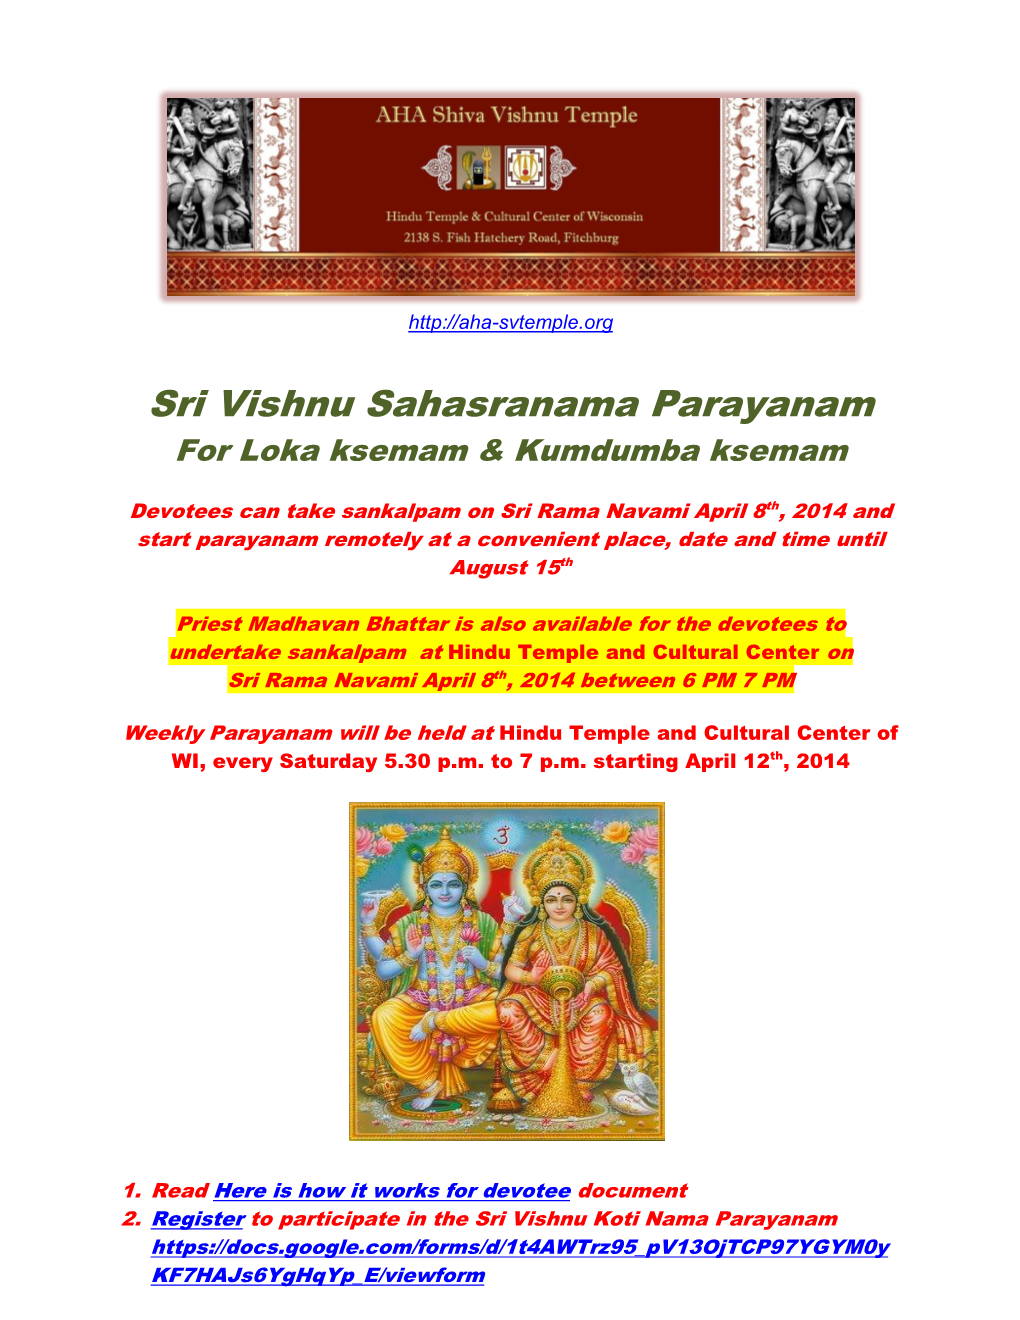 Sri Vishnu Sahasranama Parayanam for Loka Ksemam & Kumdumba Ksemam